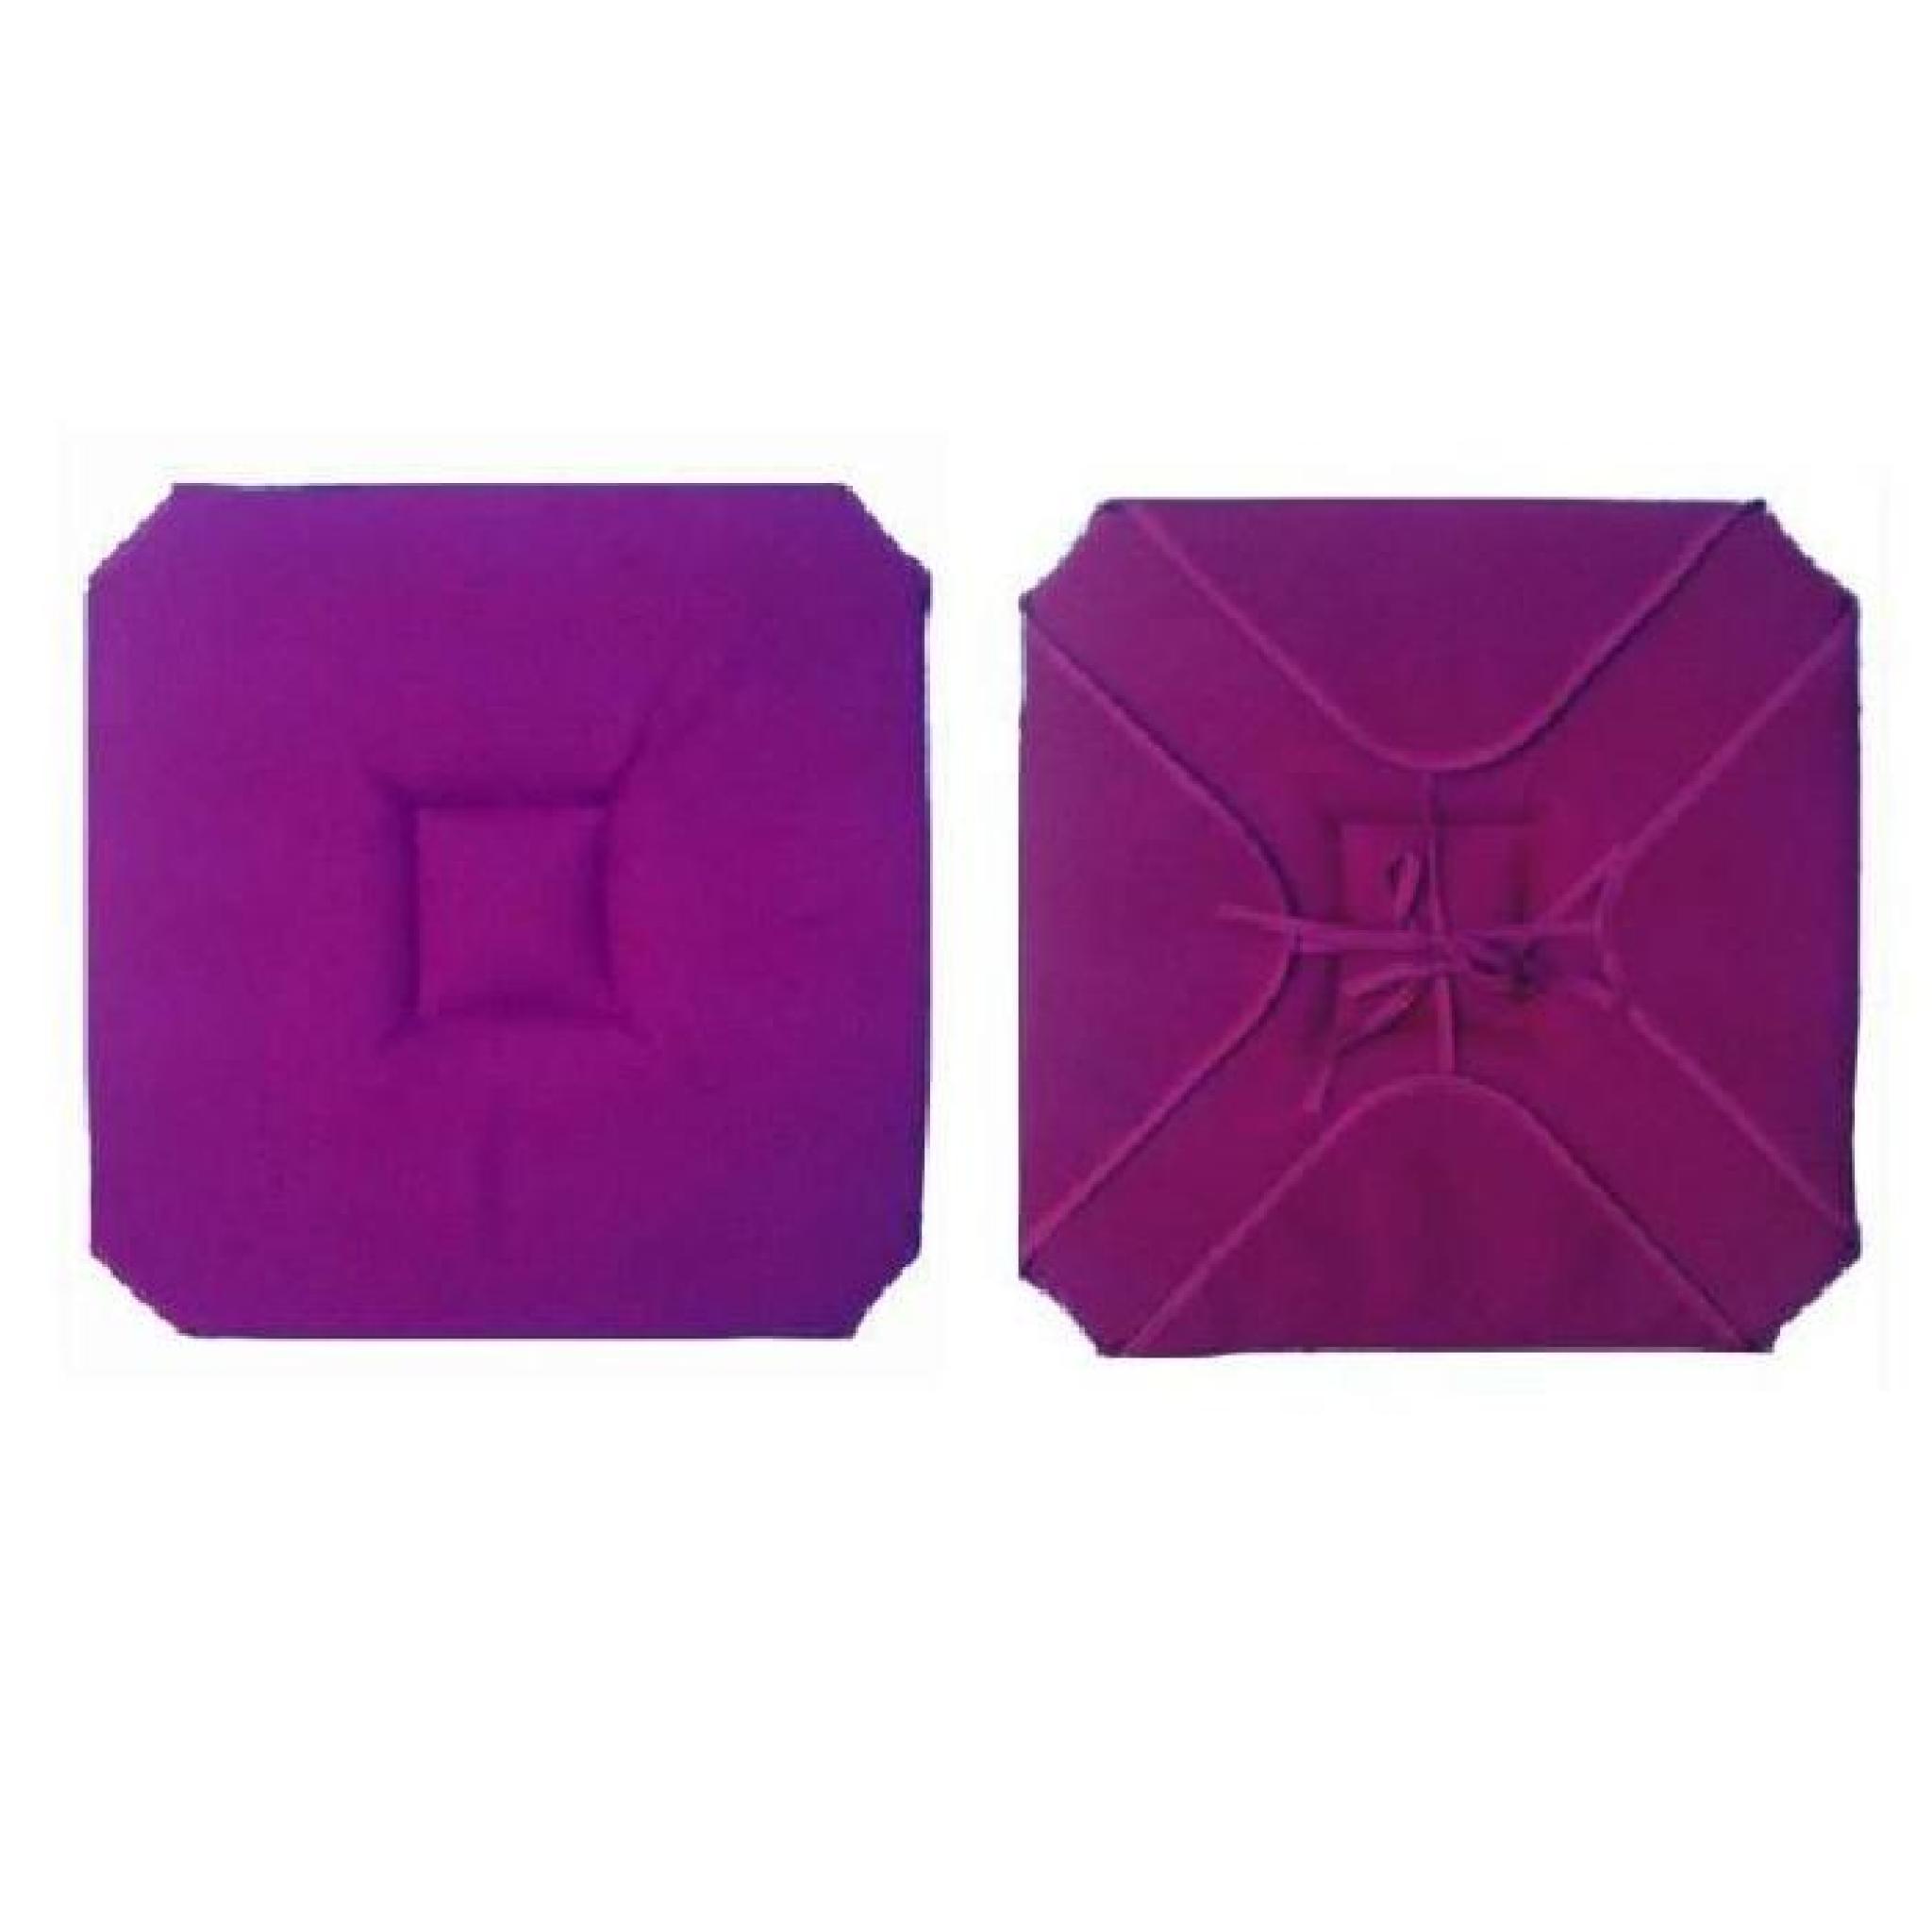 Coussin de chaise 4 rabats uni violet 40cm x 40cm pas cher